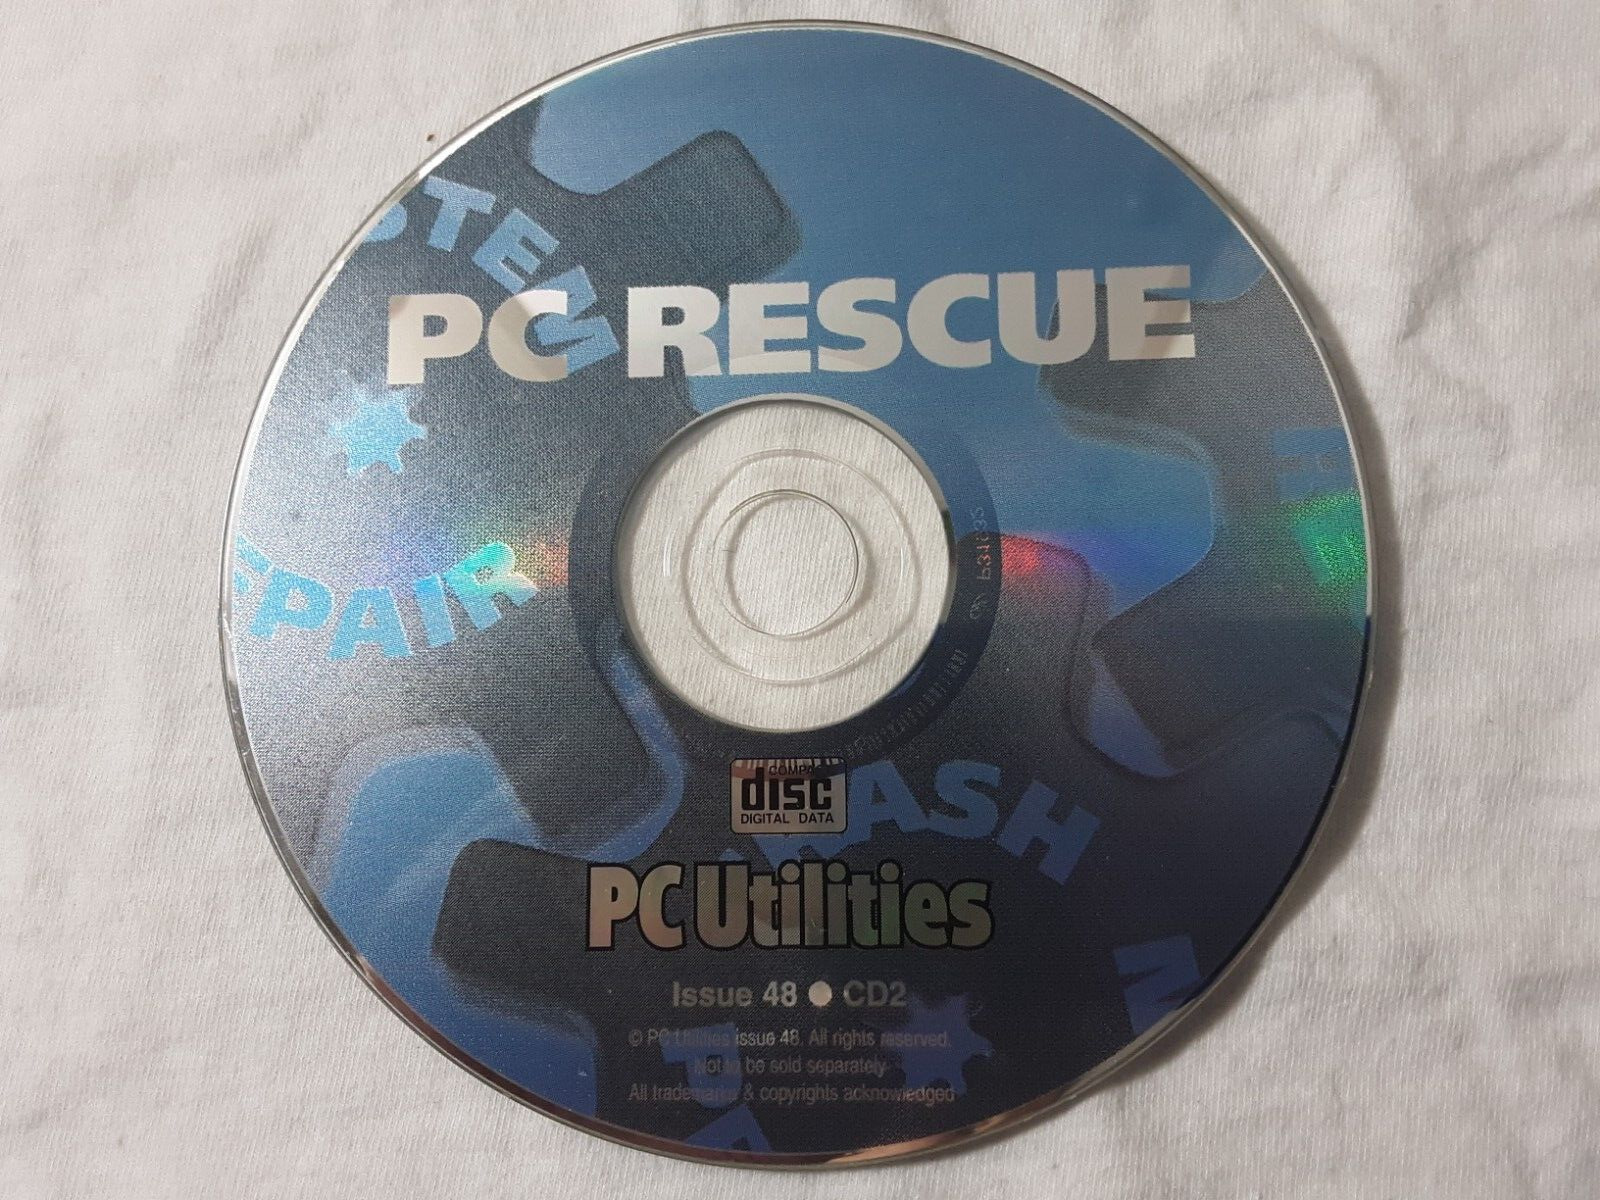 retro 2003 CD-Rom PC Utilities #48 - PC Rescue  rare vintage